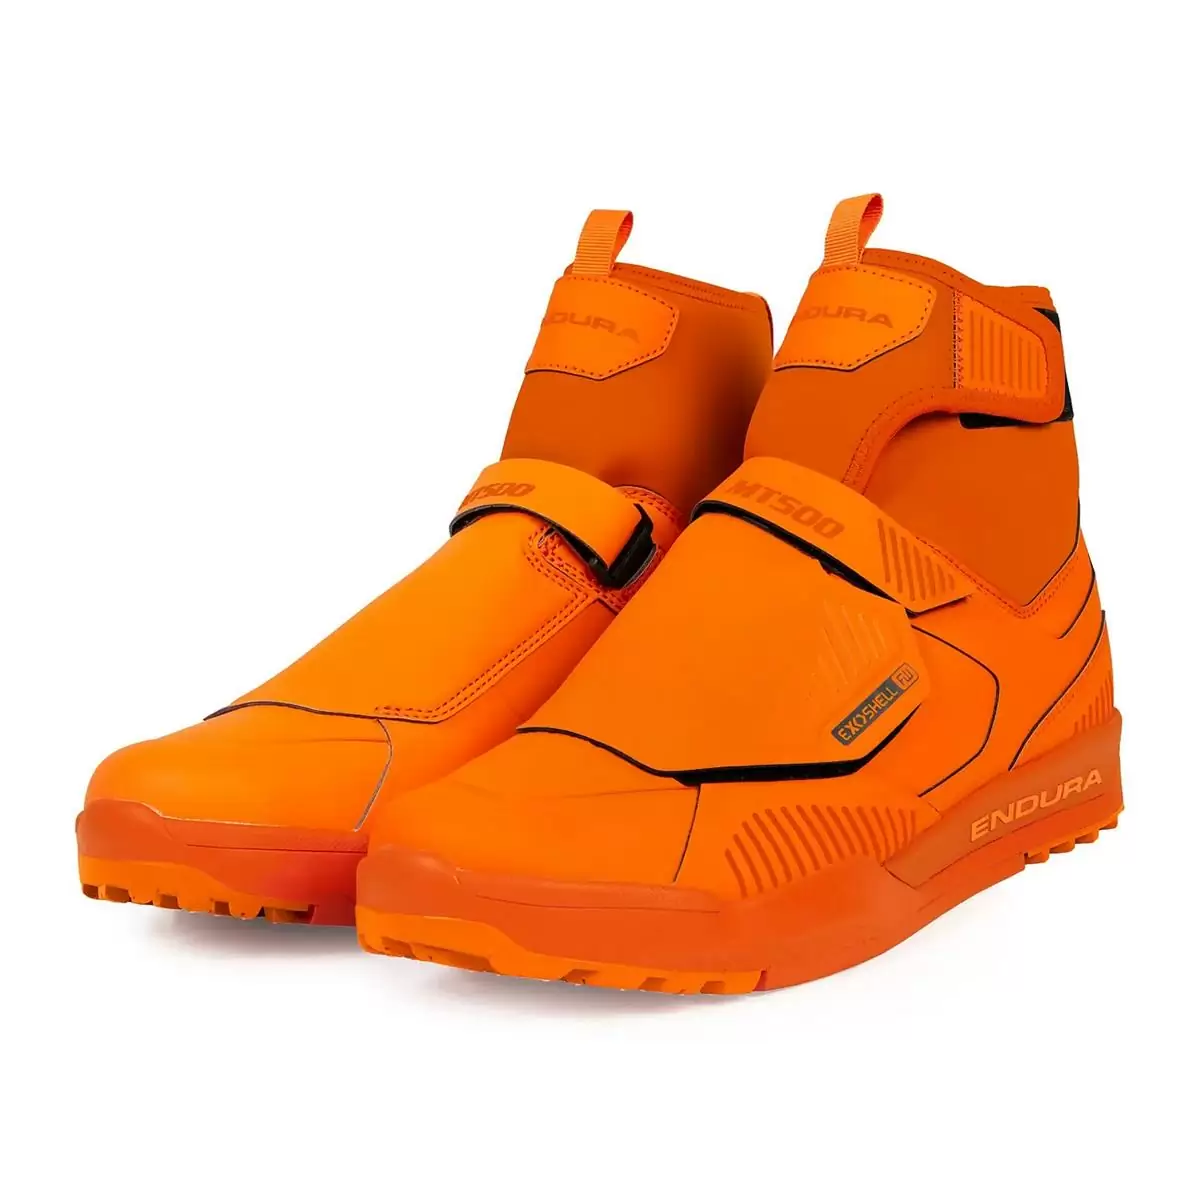 Chaussures VTT Etanche Clip MT500 Burner Flat Etanche Orange Taille 38 - image